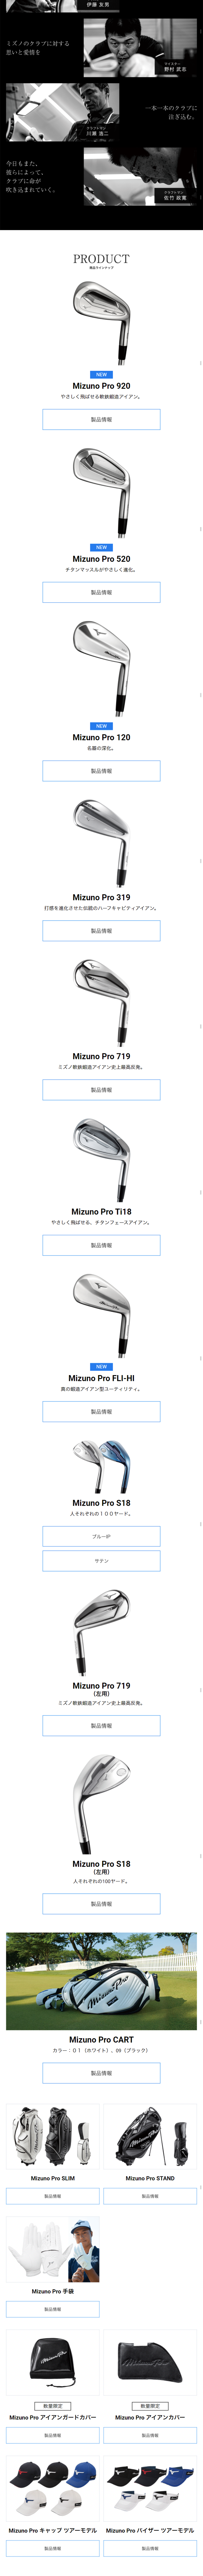 Mizuno Pro_sp_2